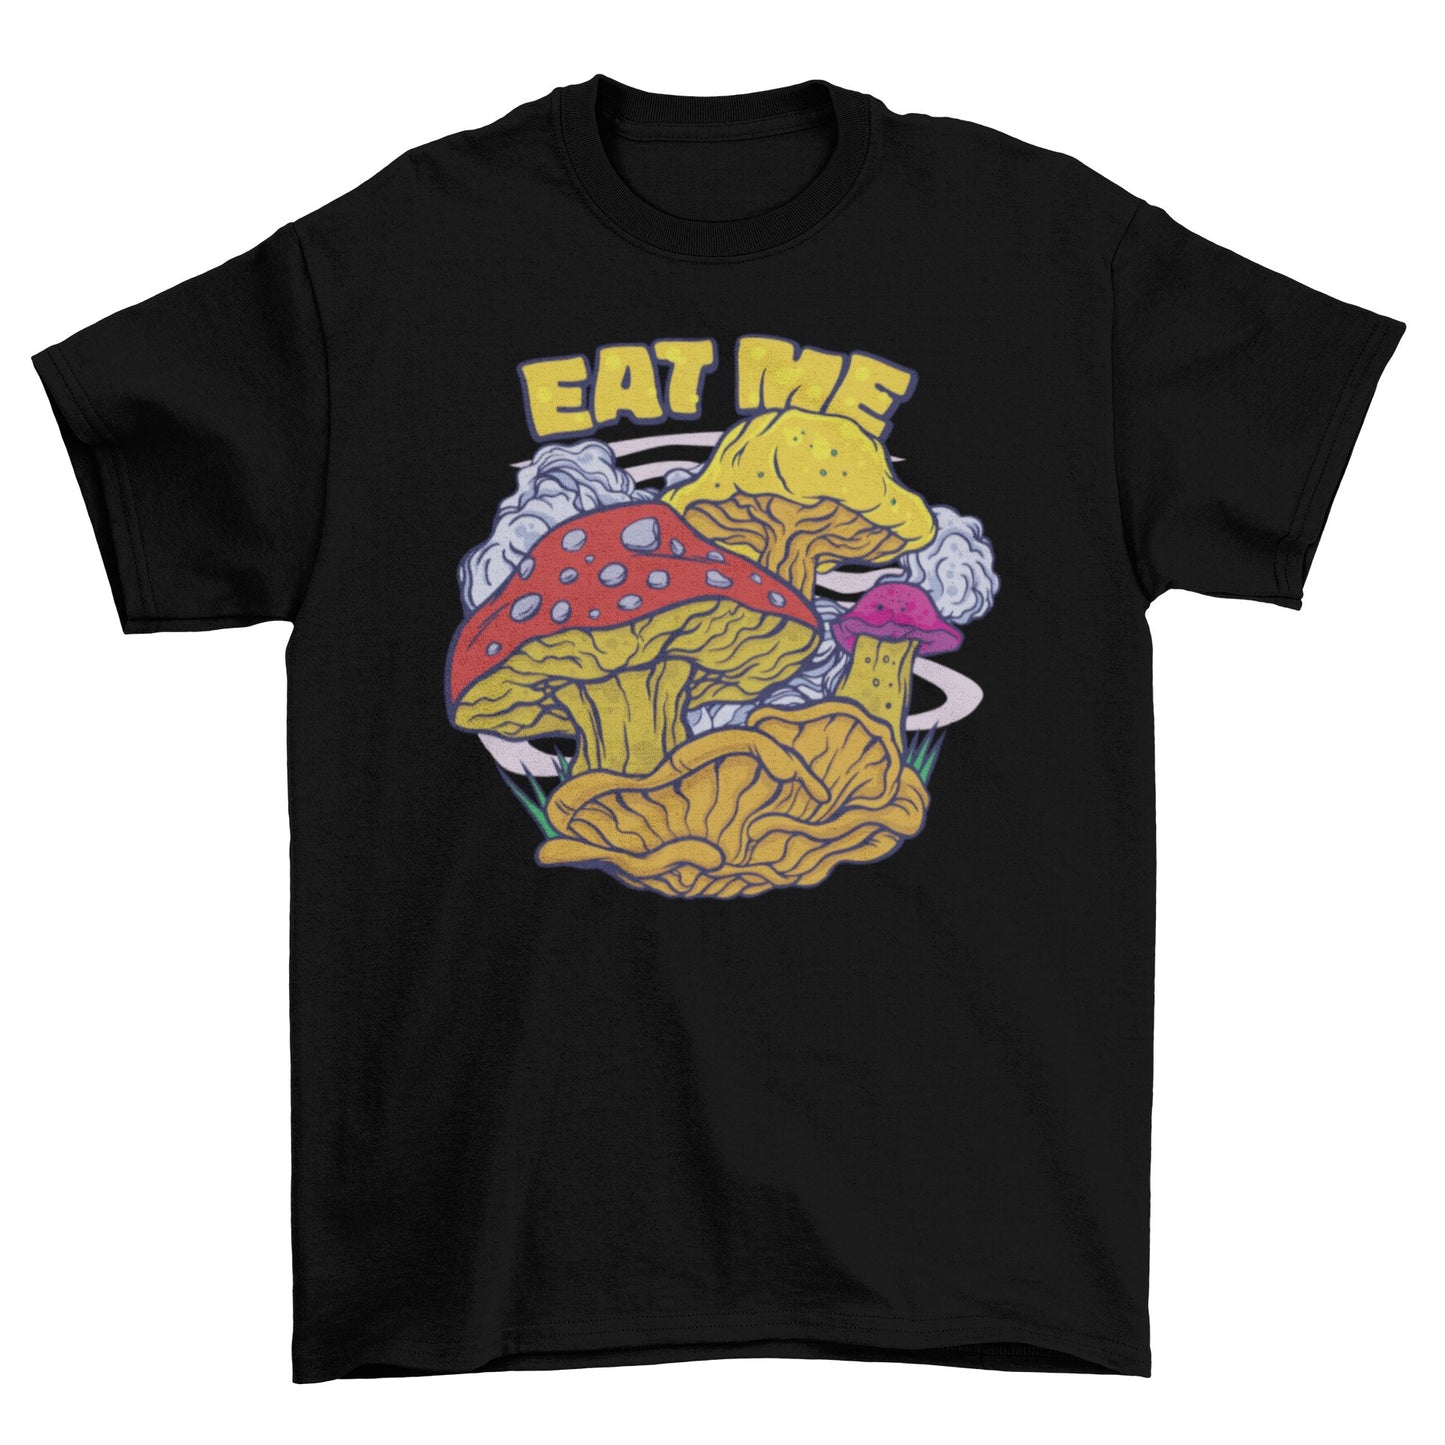 "Eat Me" Mushroom T-Shirt - The Shroomdom